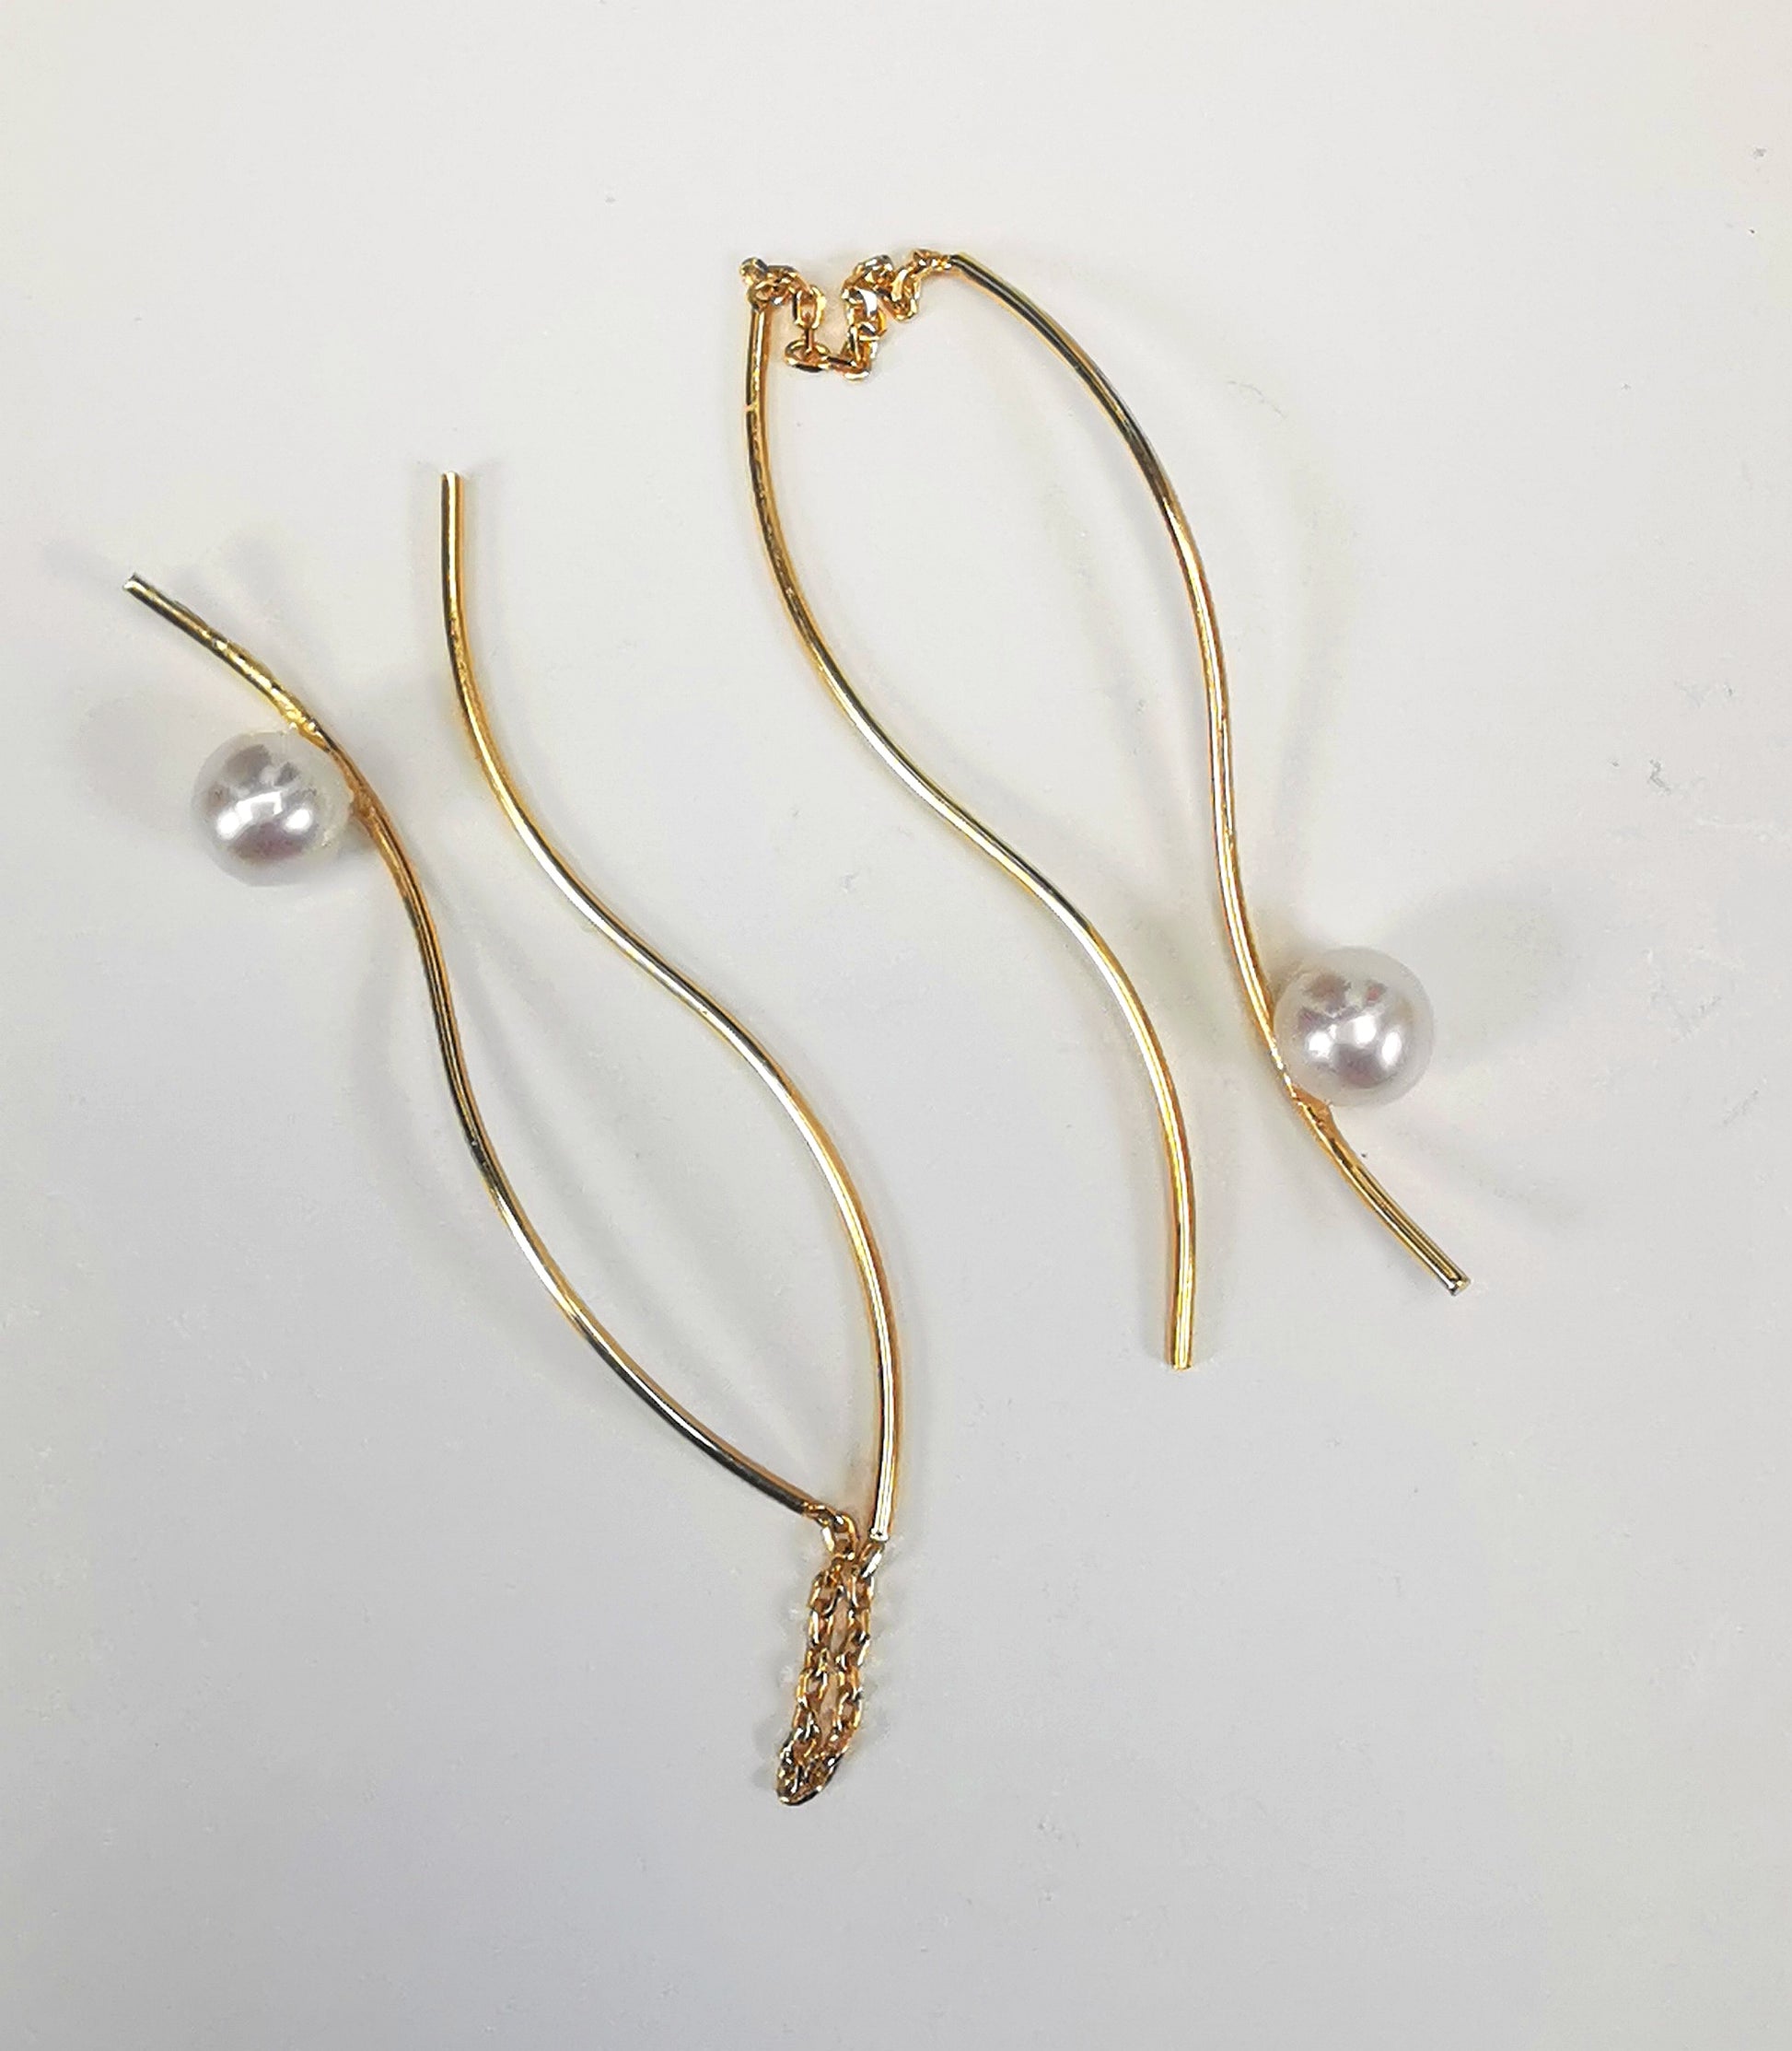 Boucles d'oreilles perles de culture blanches rondes 5mm sur pendants plaqués or. Les pendants sont constitués de deux "s" longs de 45mm reliés par 15mm de chaine. Sur un des 2 "s", la perle est montée perpendiculairement, à 8mm du bas. Présentées cote à cote, boucle de gauche perle en haut, celle de droite perle en bas, , posées sur fond blanc. Vue de dessus.